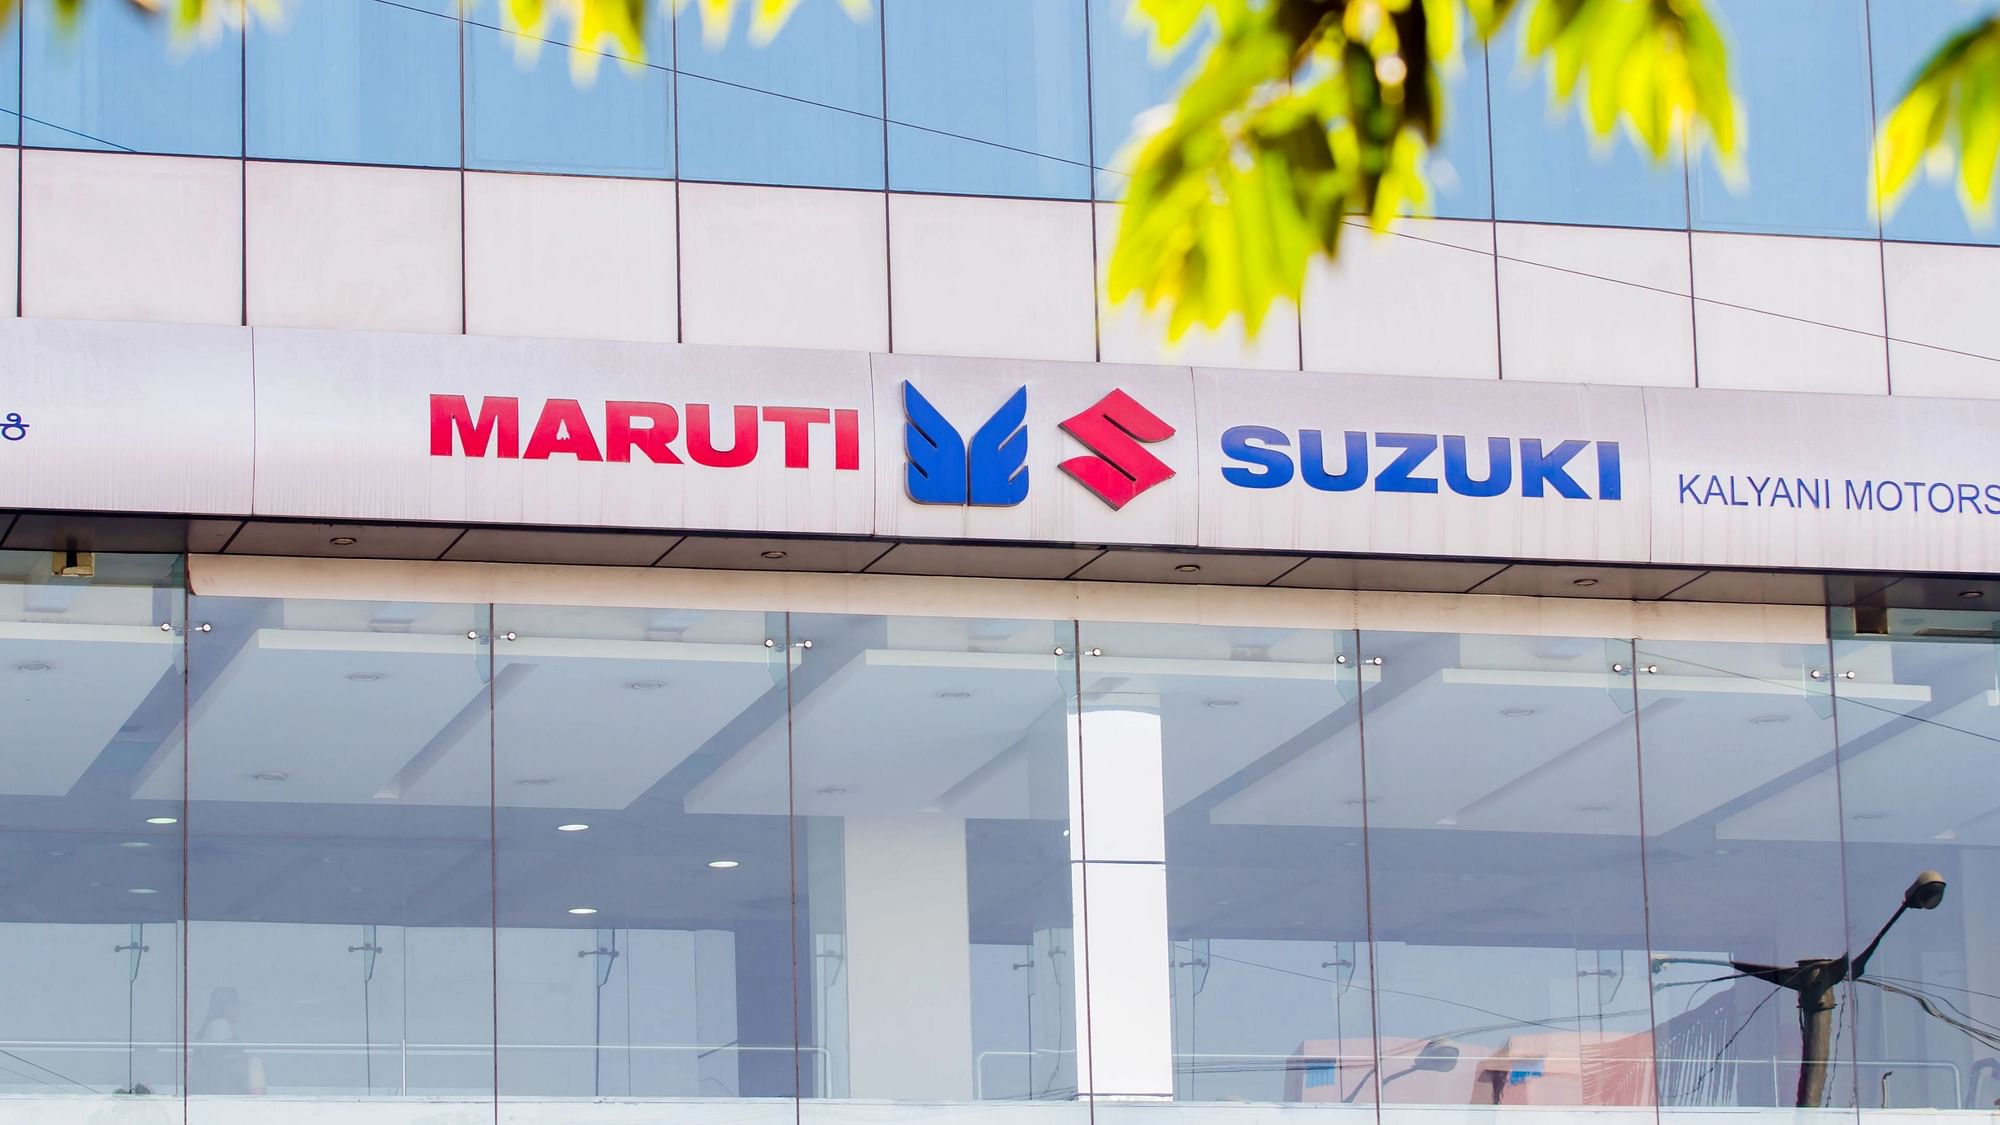 <div class="paragraphs"><p>Maruti Suzuki Premium MPV Invicto will arrive on 5 July. Check details here.</p></div>